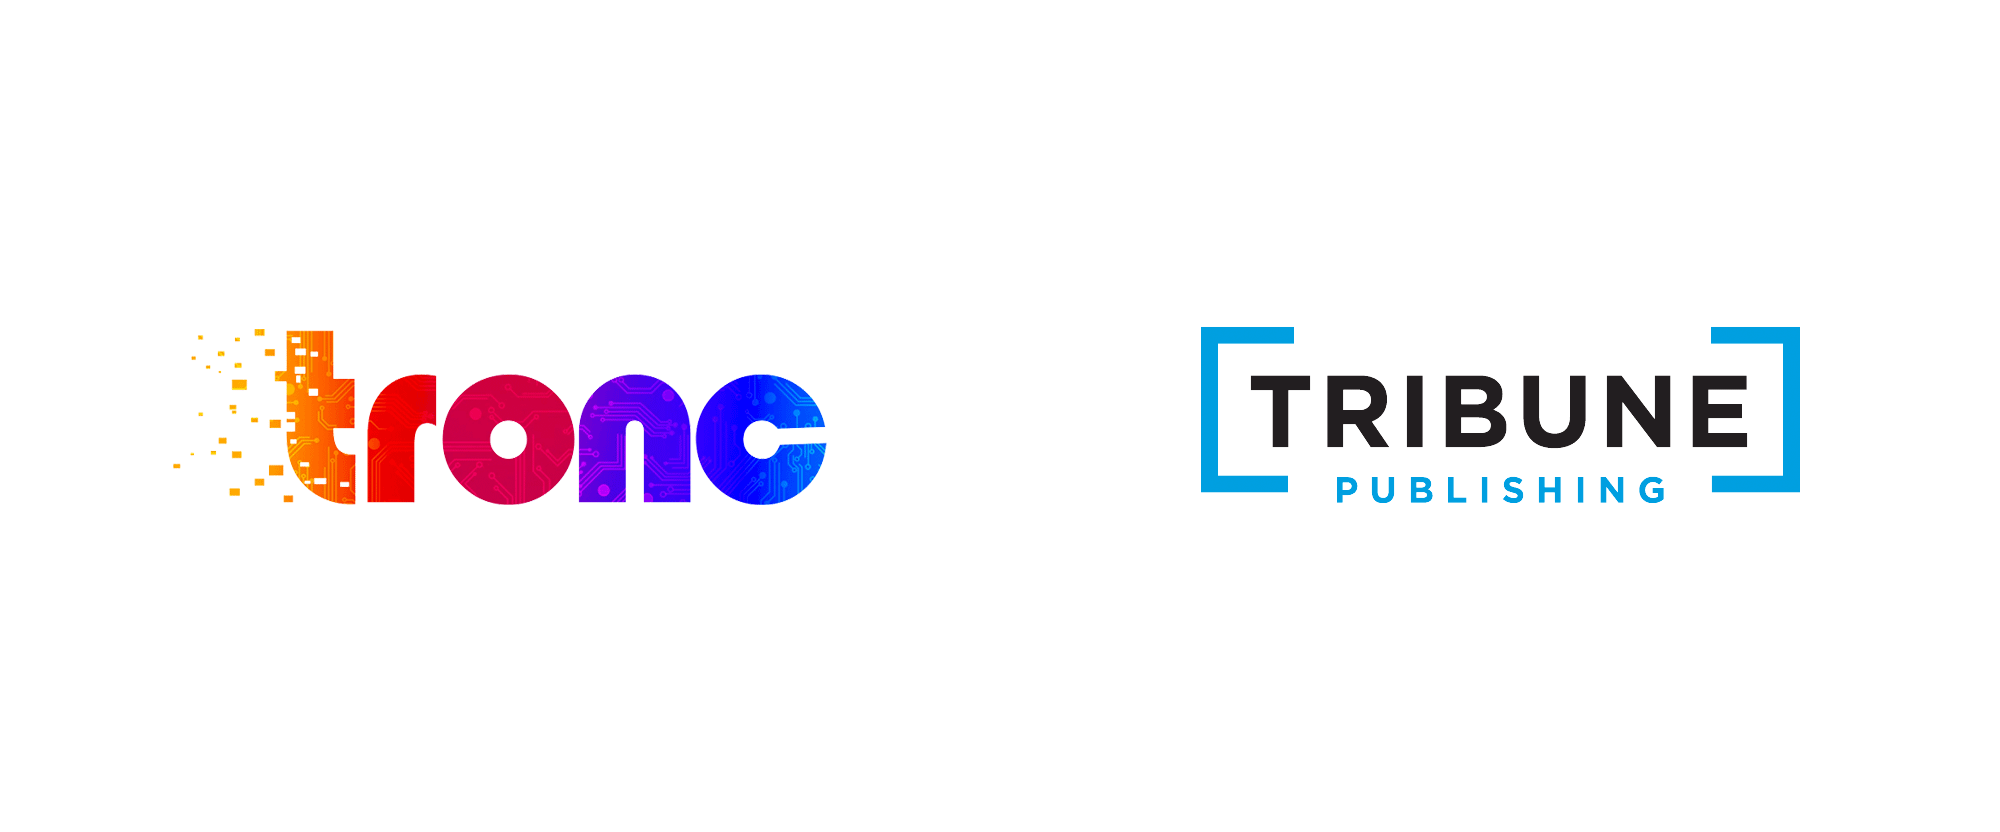 Tribune Logo - Brand New: New (Old) Name and Logo for Tribune Publishing